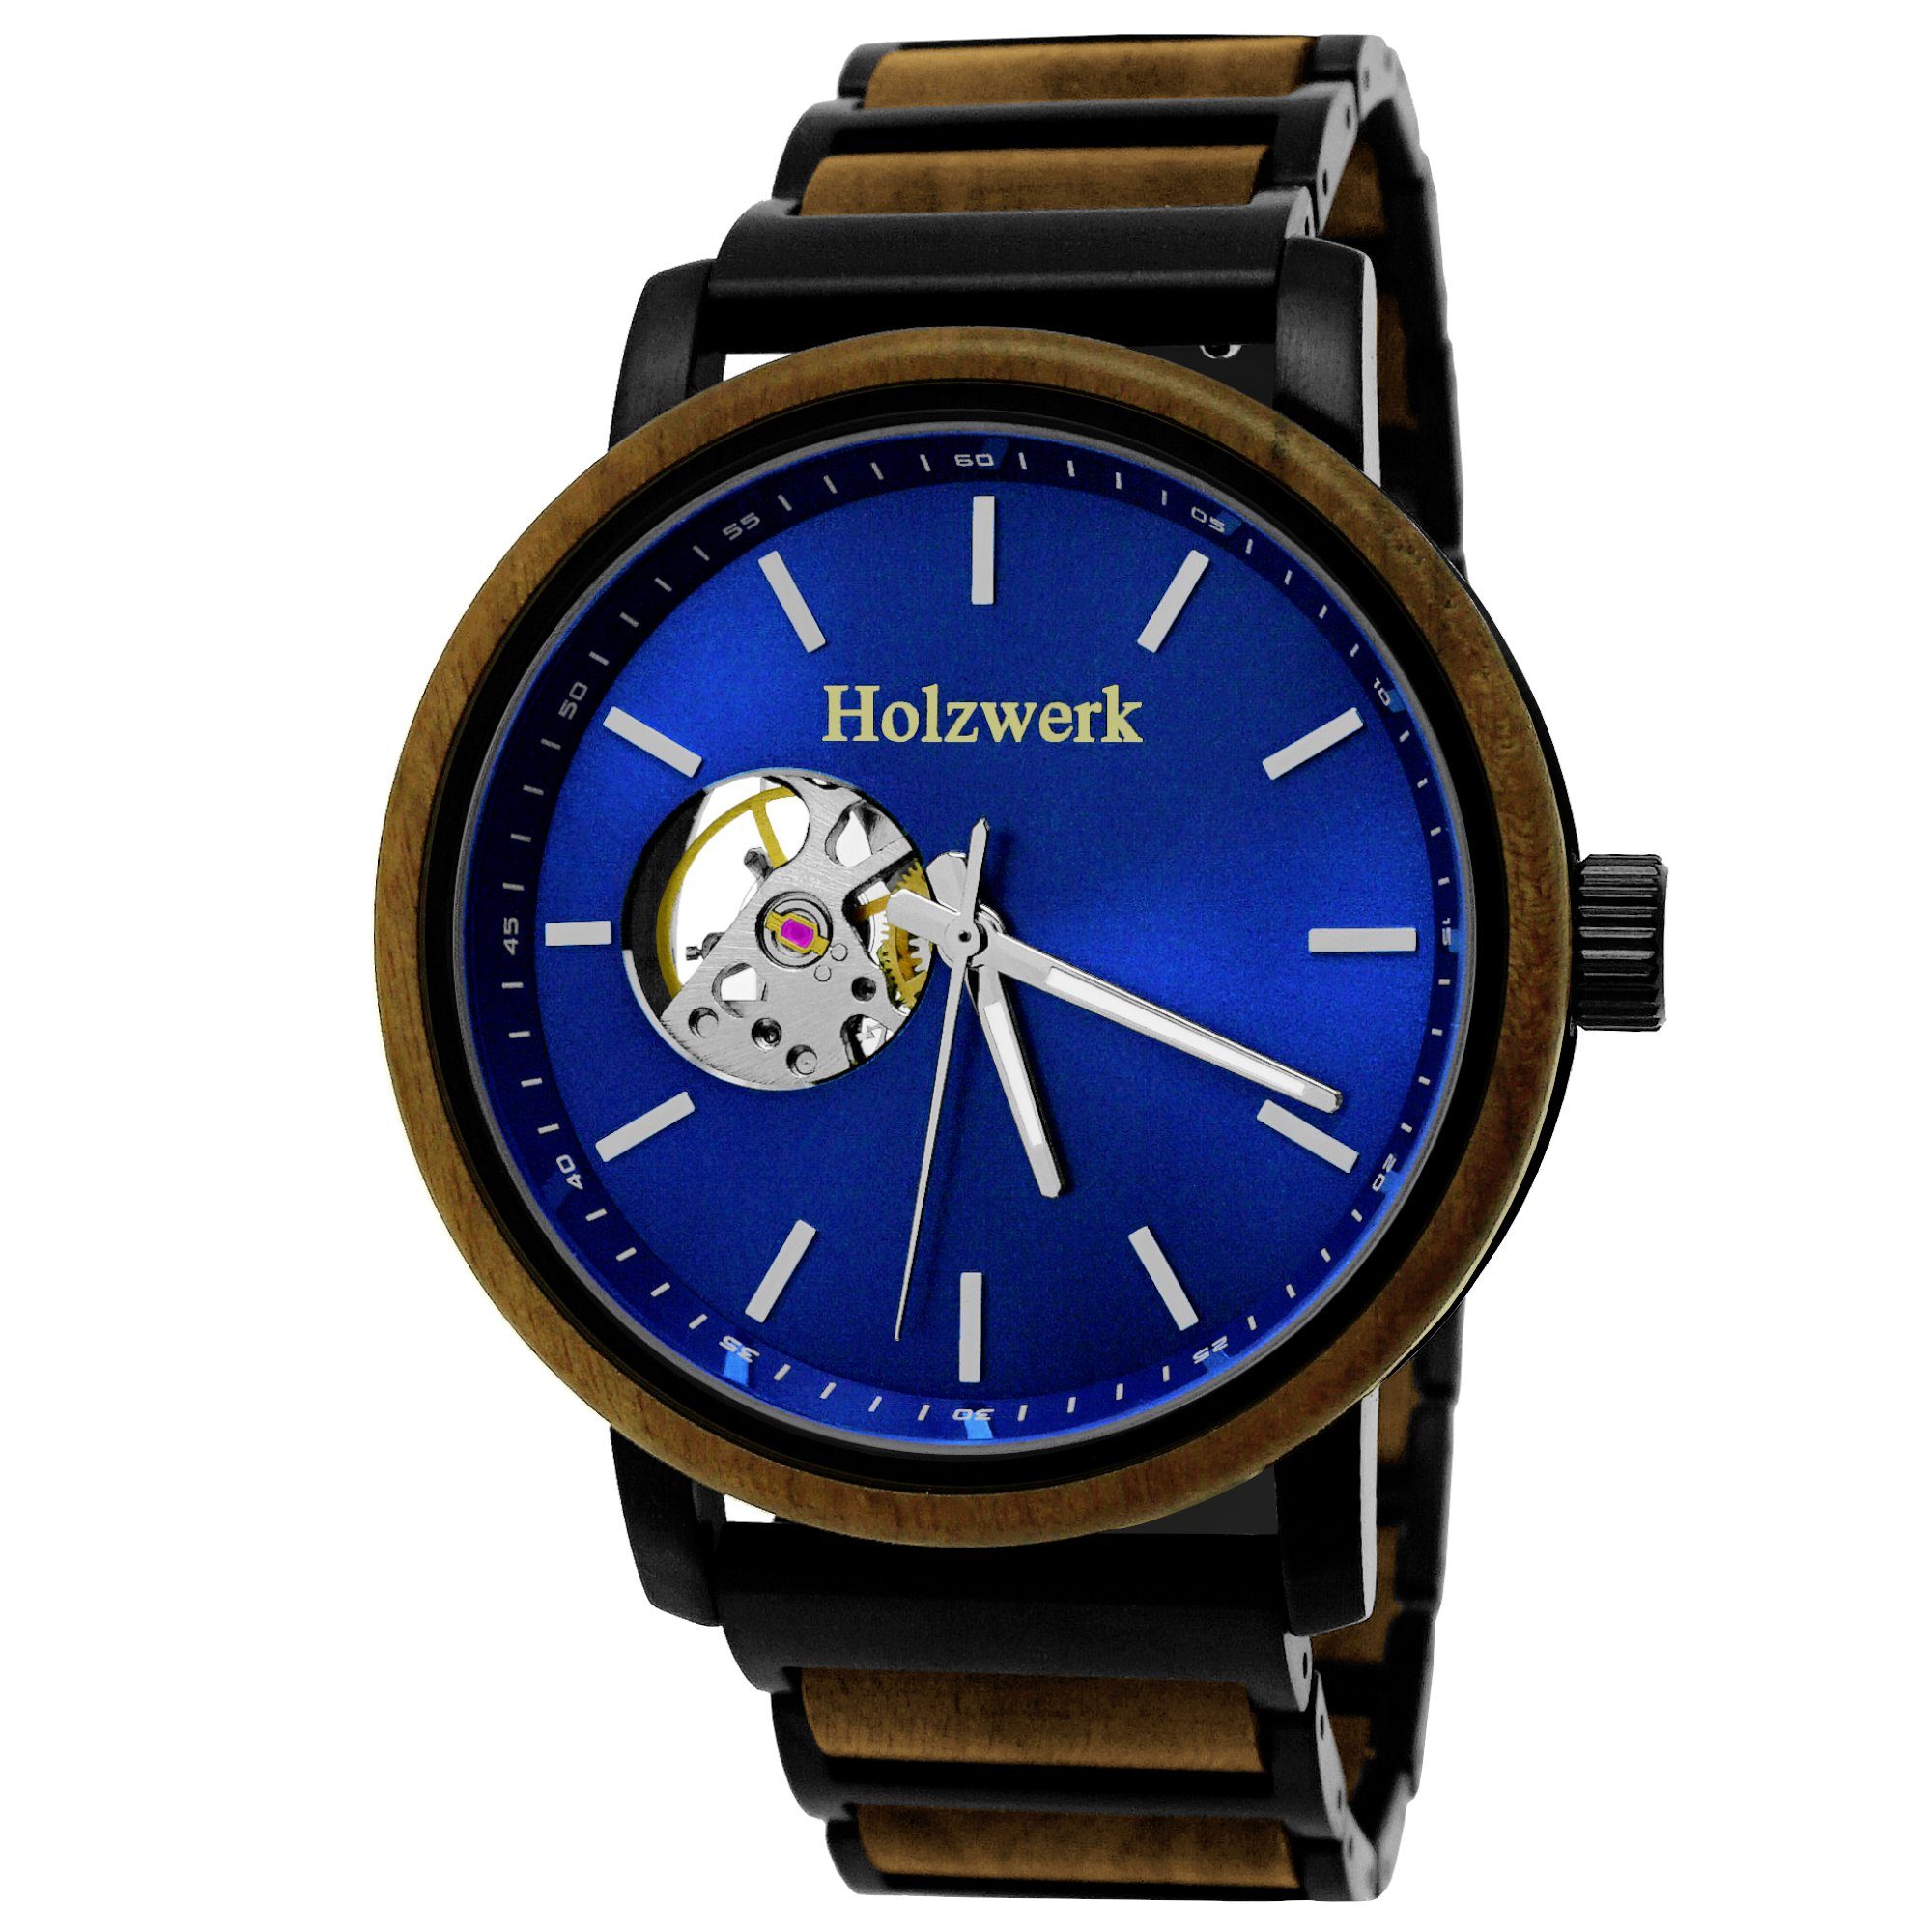 Holz Automatikuhr CLAUSTHAL schwarz, Armband Edelstahl Herren braun, & Uhr, Holzwerk blau